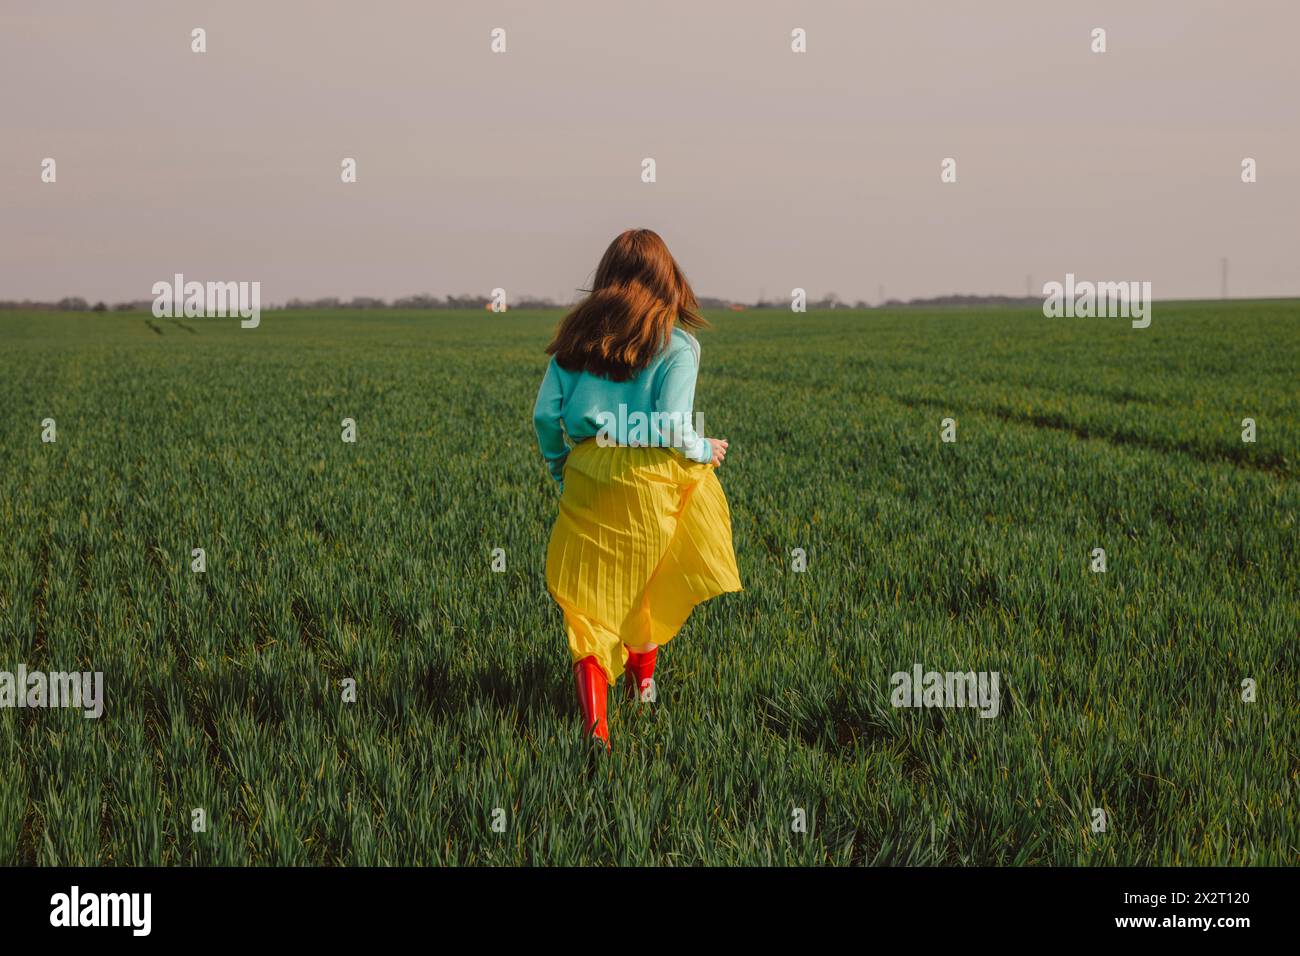 Eine junge Frau mit gelbem Rock und rennt auf einem grünen Weizenfeld unter dem Himmel Stockfoto